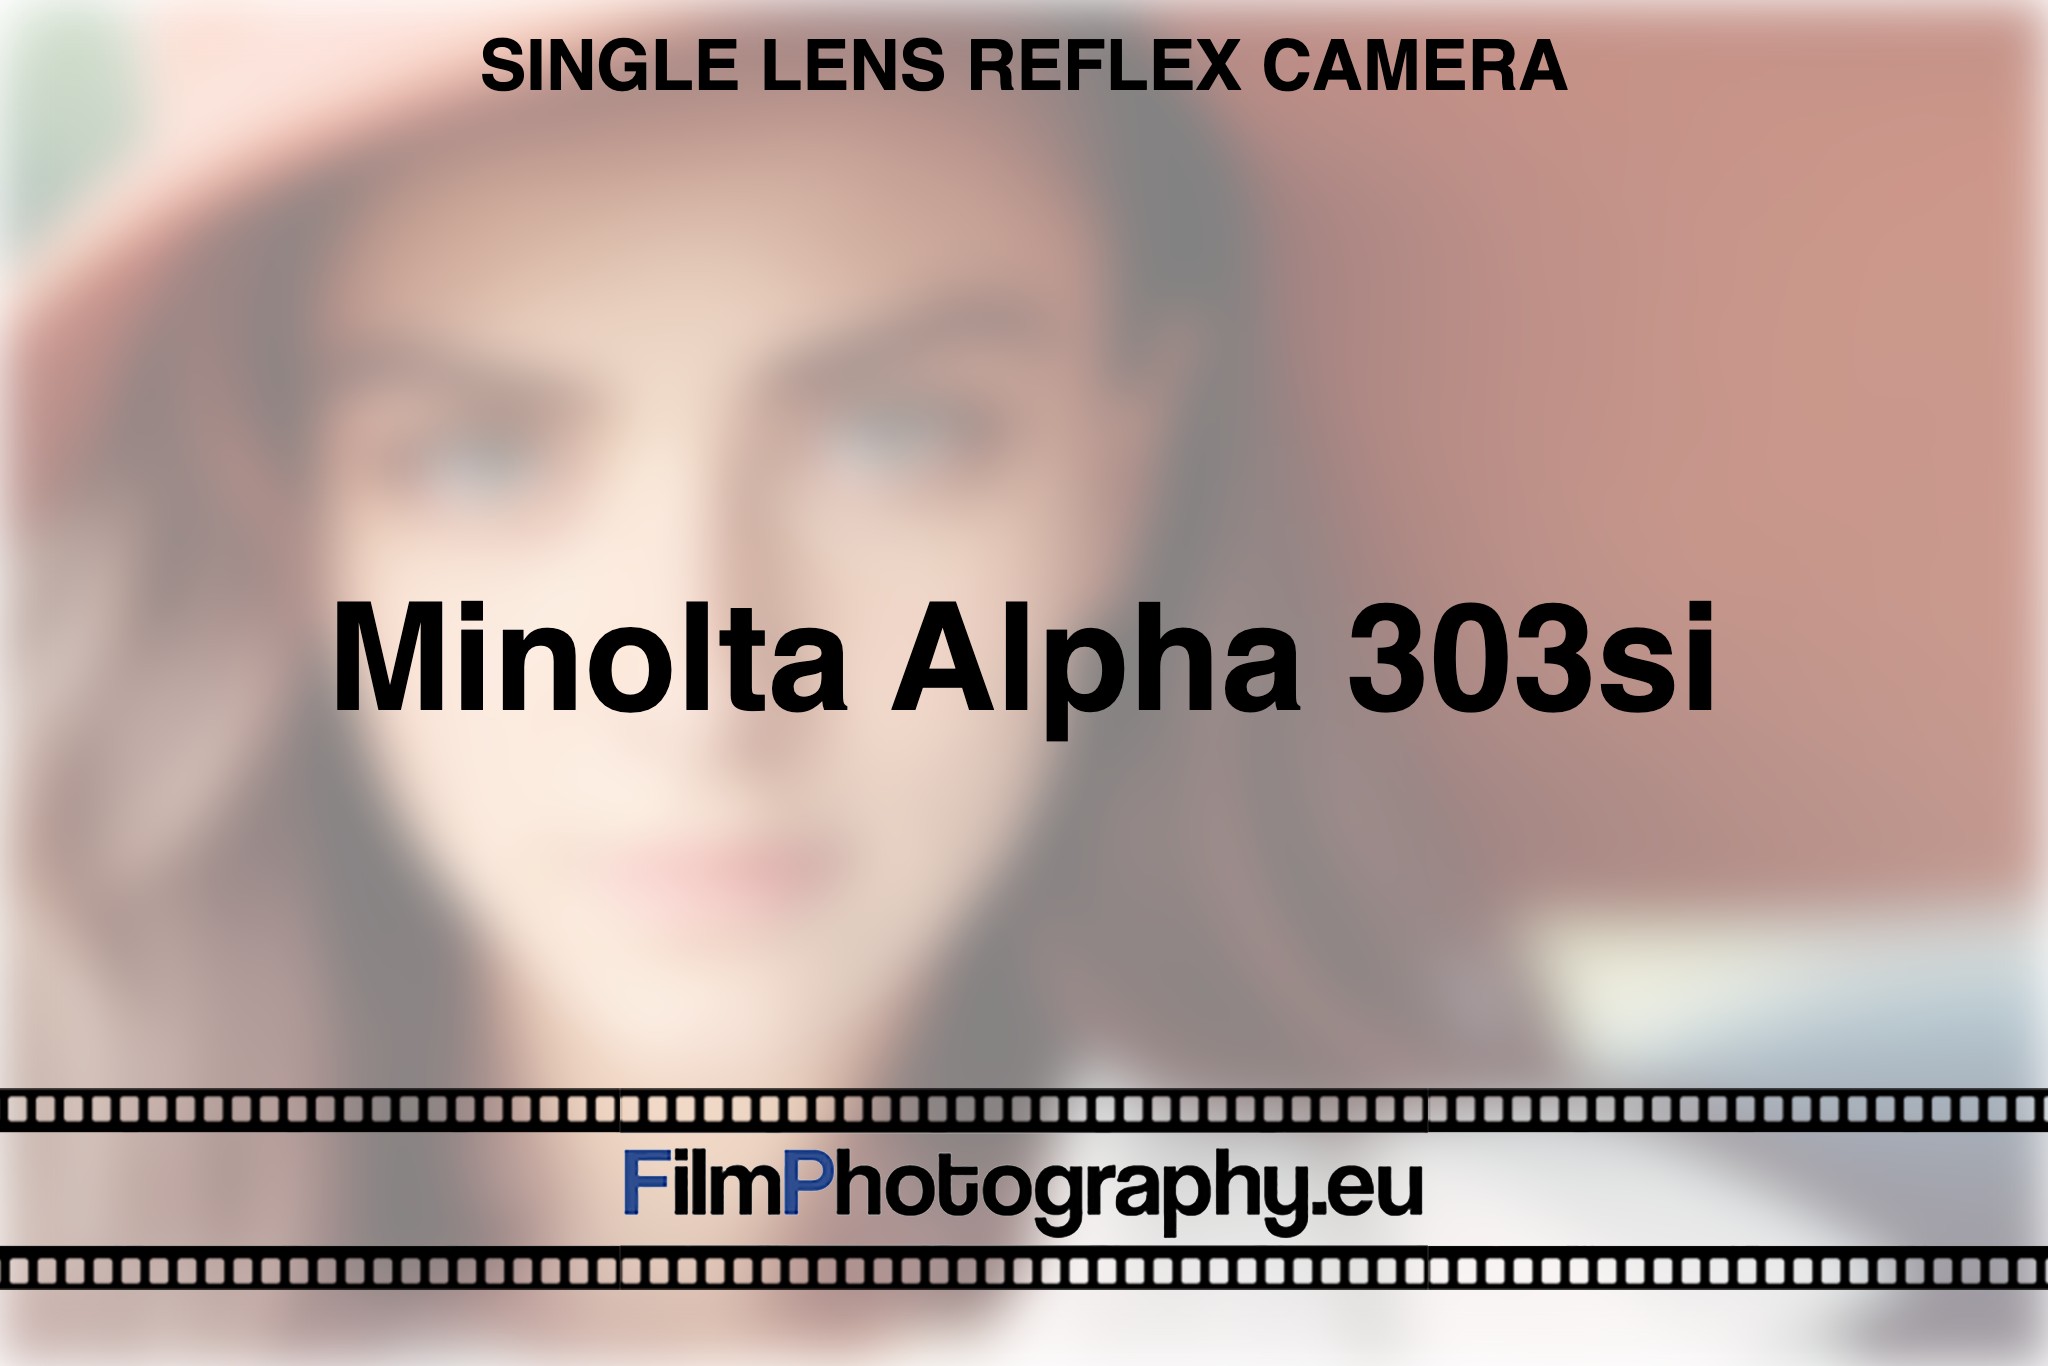 minolta-alpha-303si-single-lens-reflex-camera-bnv